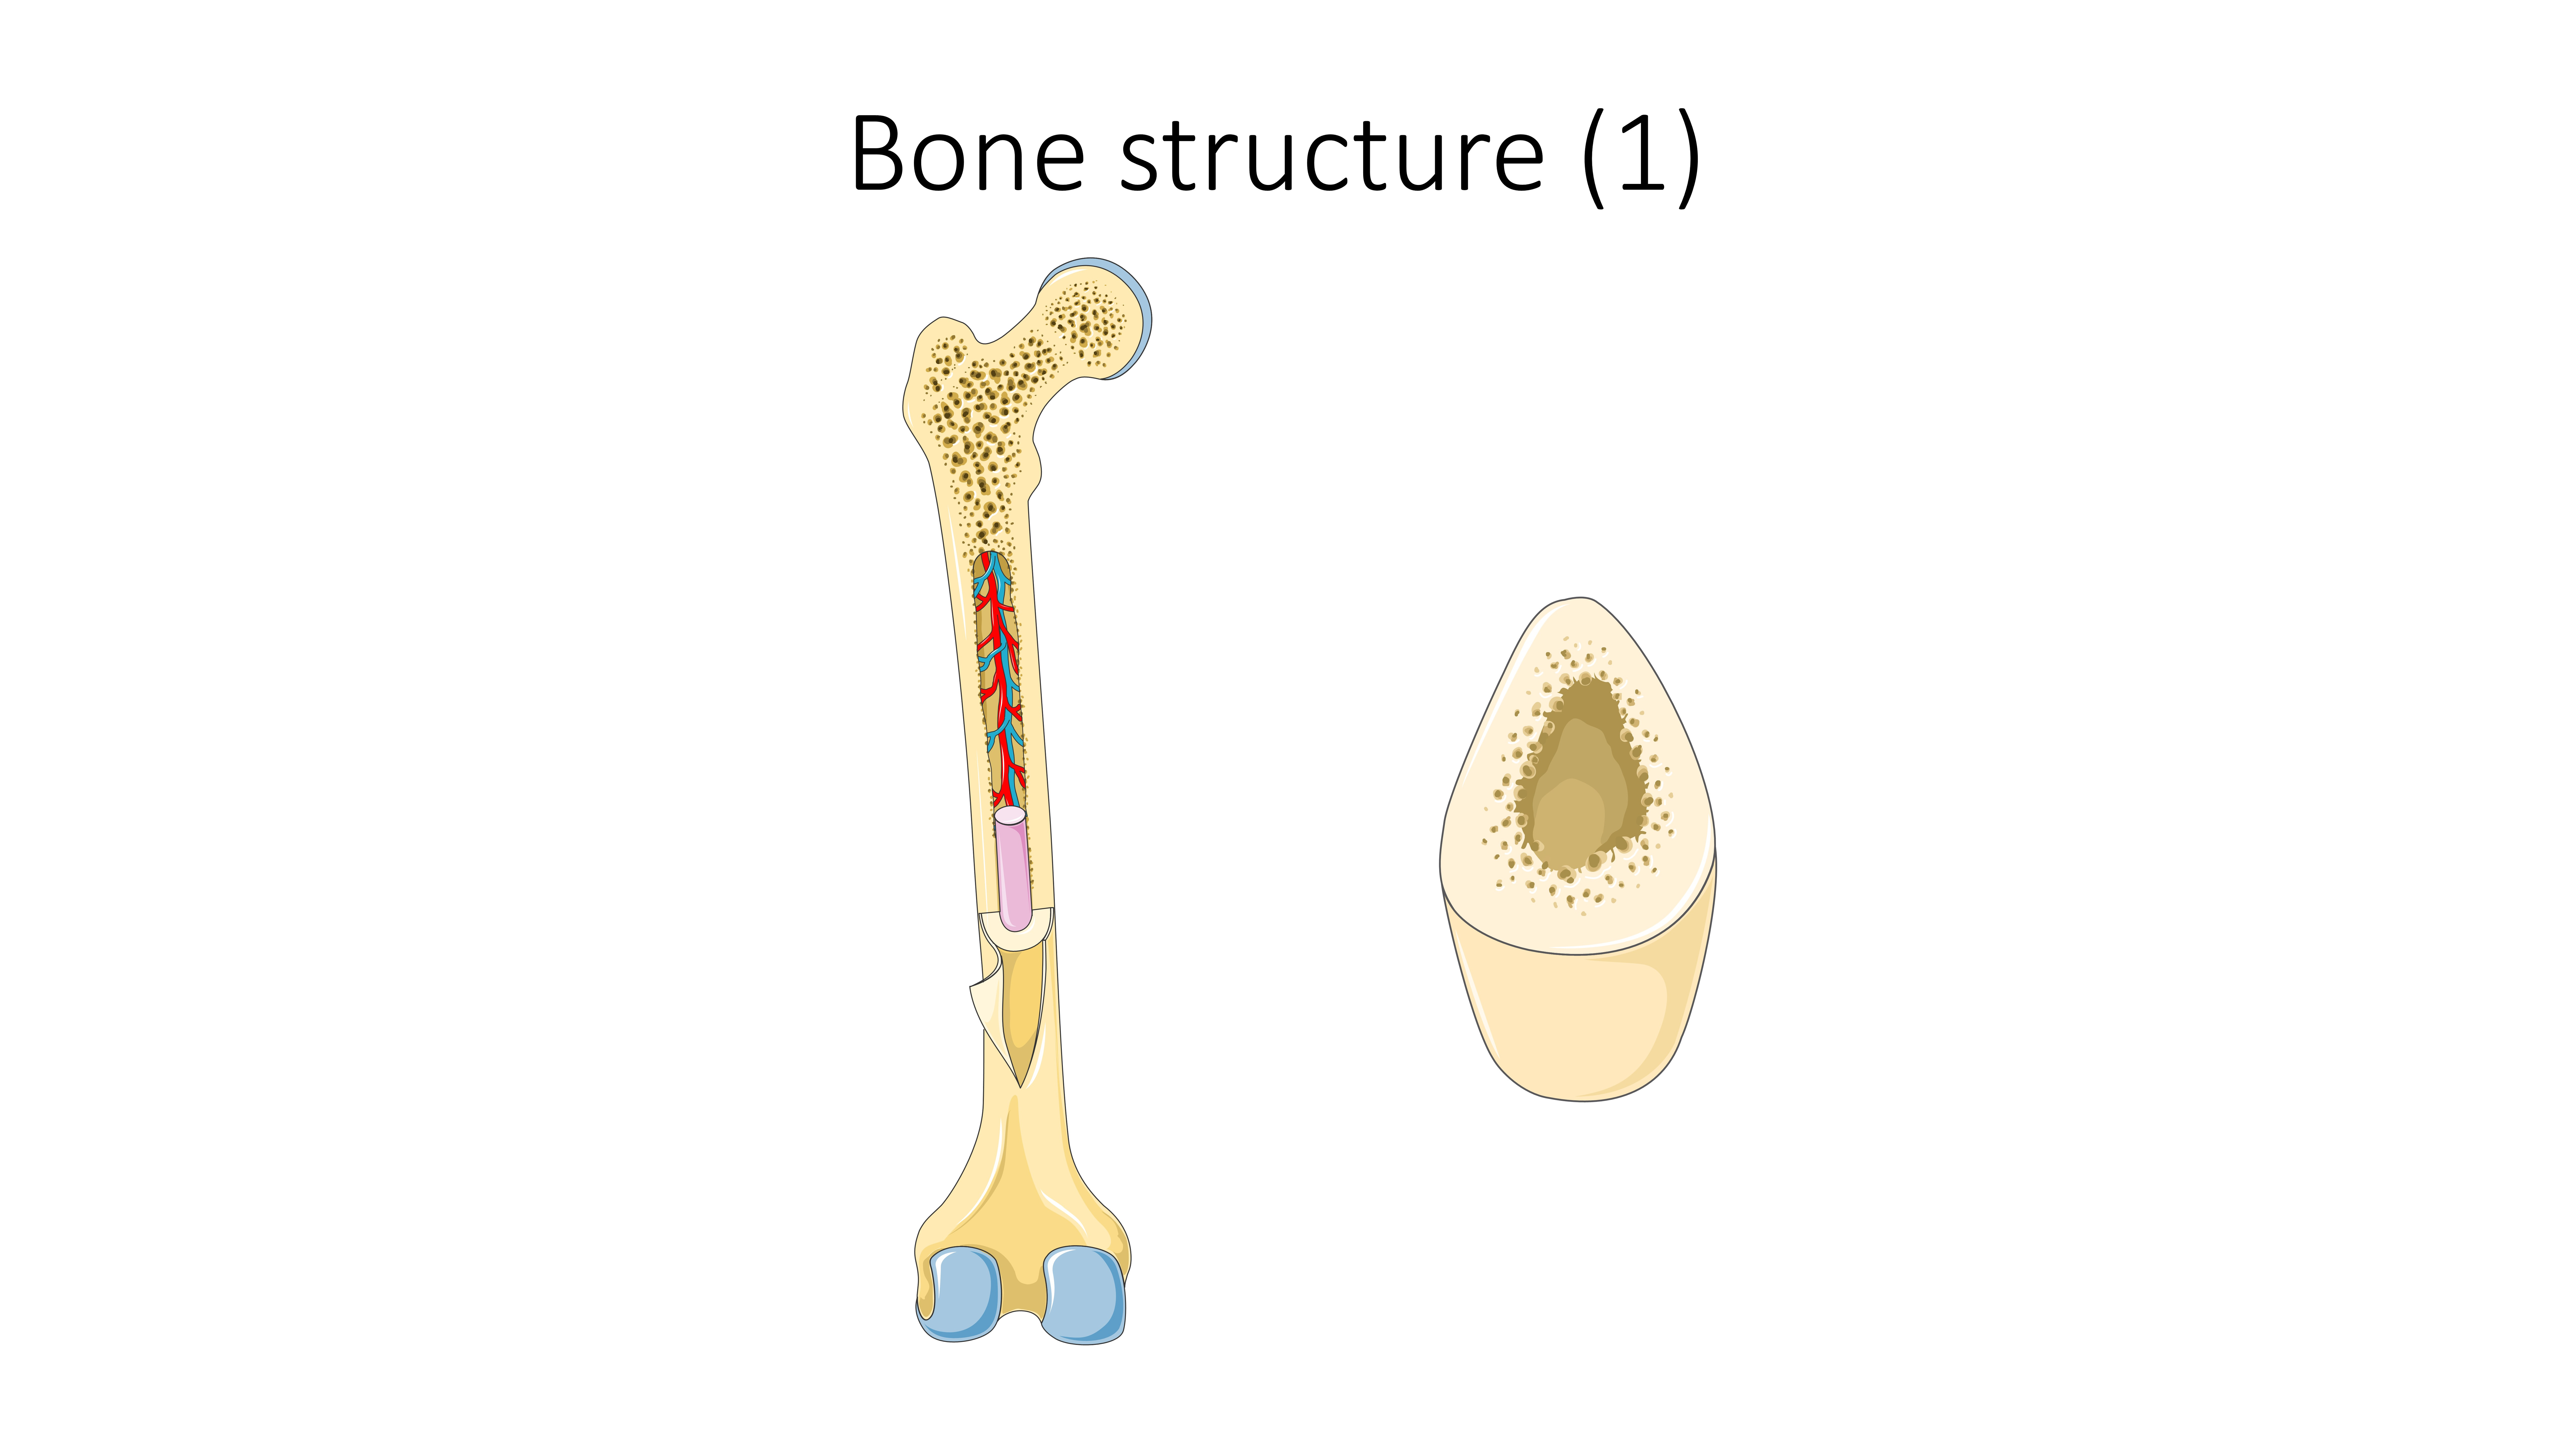 Now bone